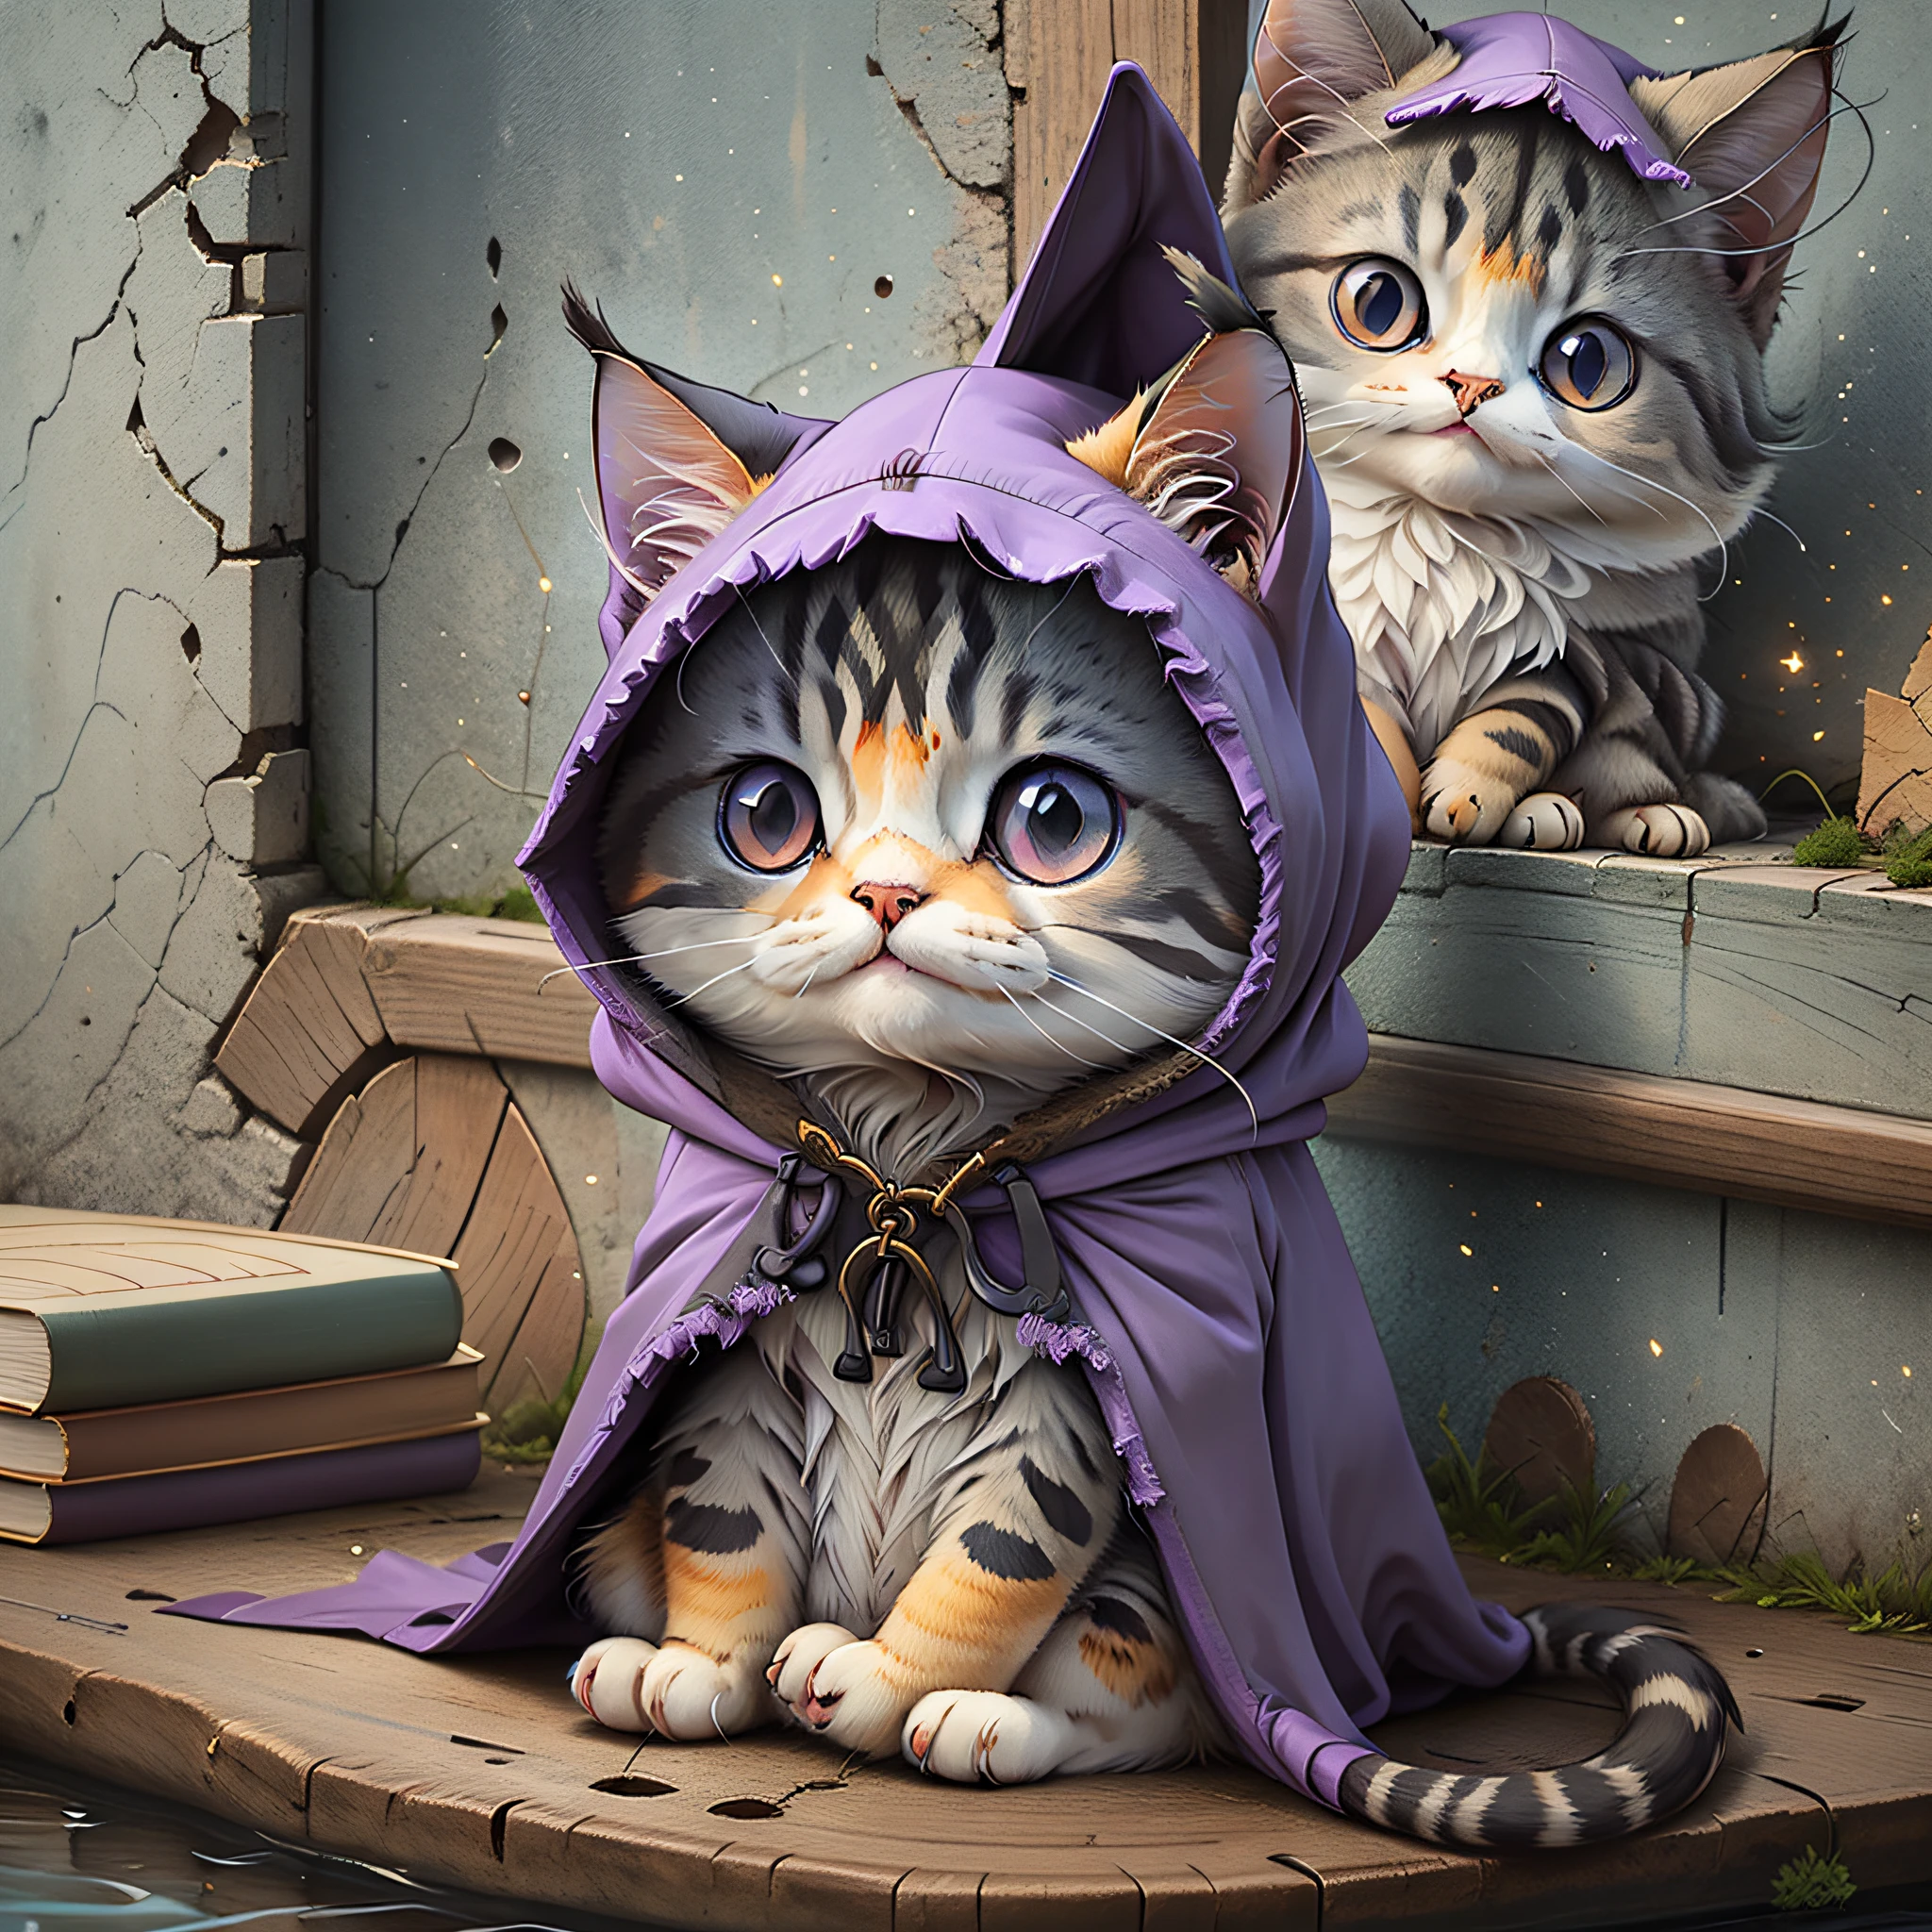 짙은 보라색 망토를 입은 마법사로 분장한 고양이의 귀여운 만화 스티커